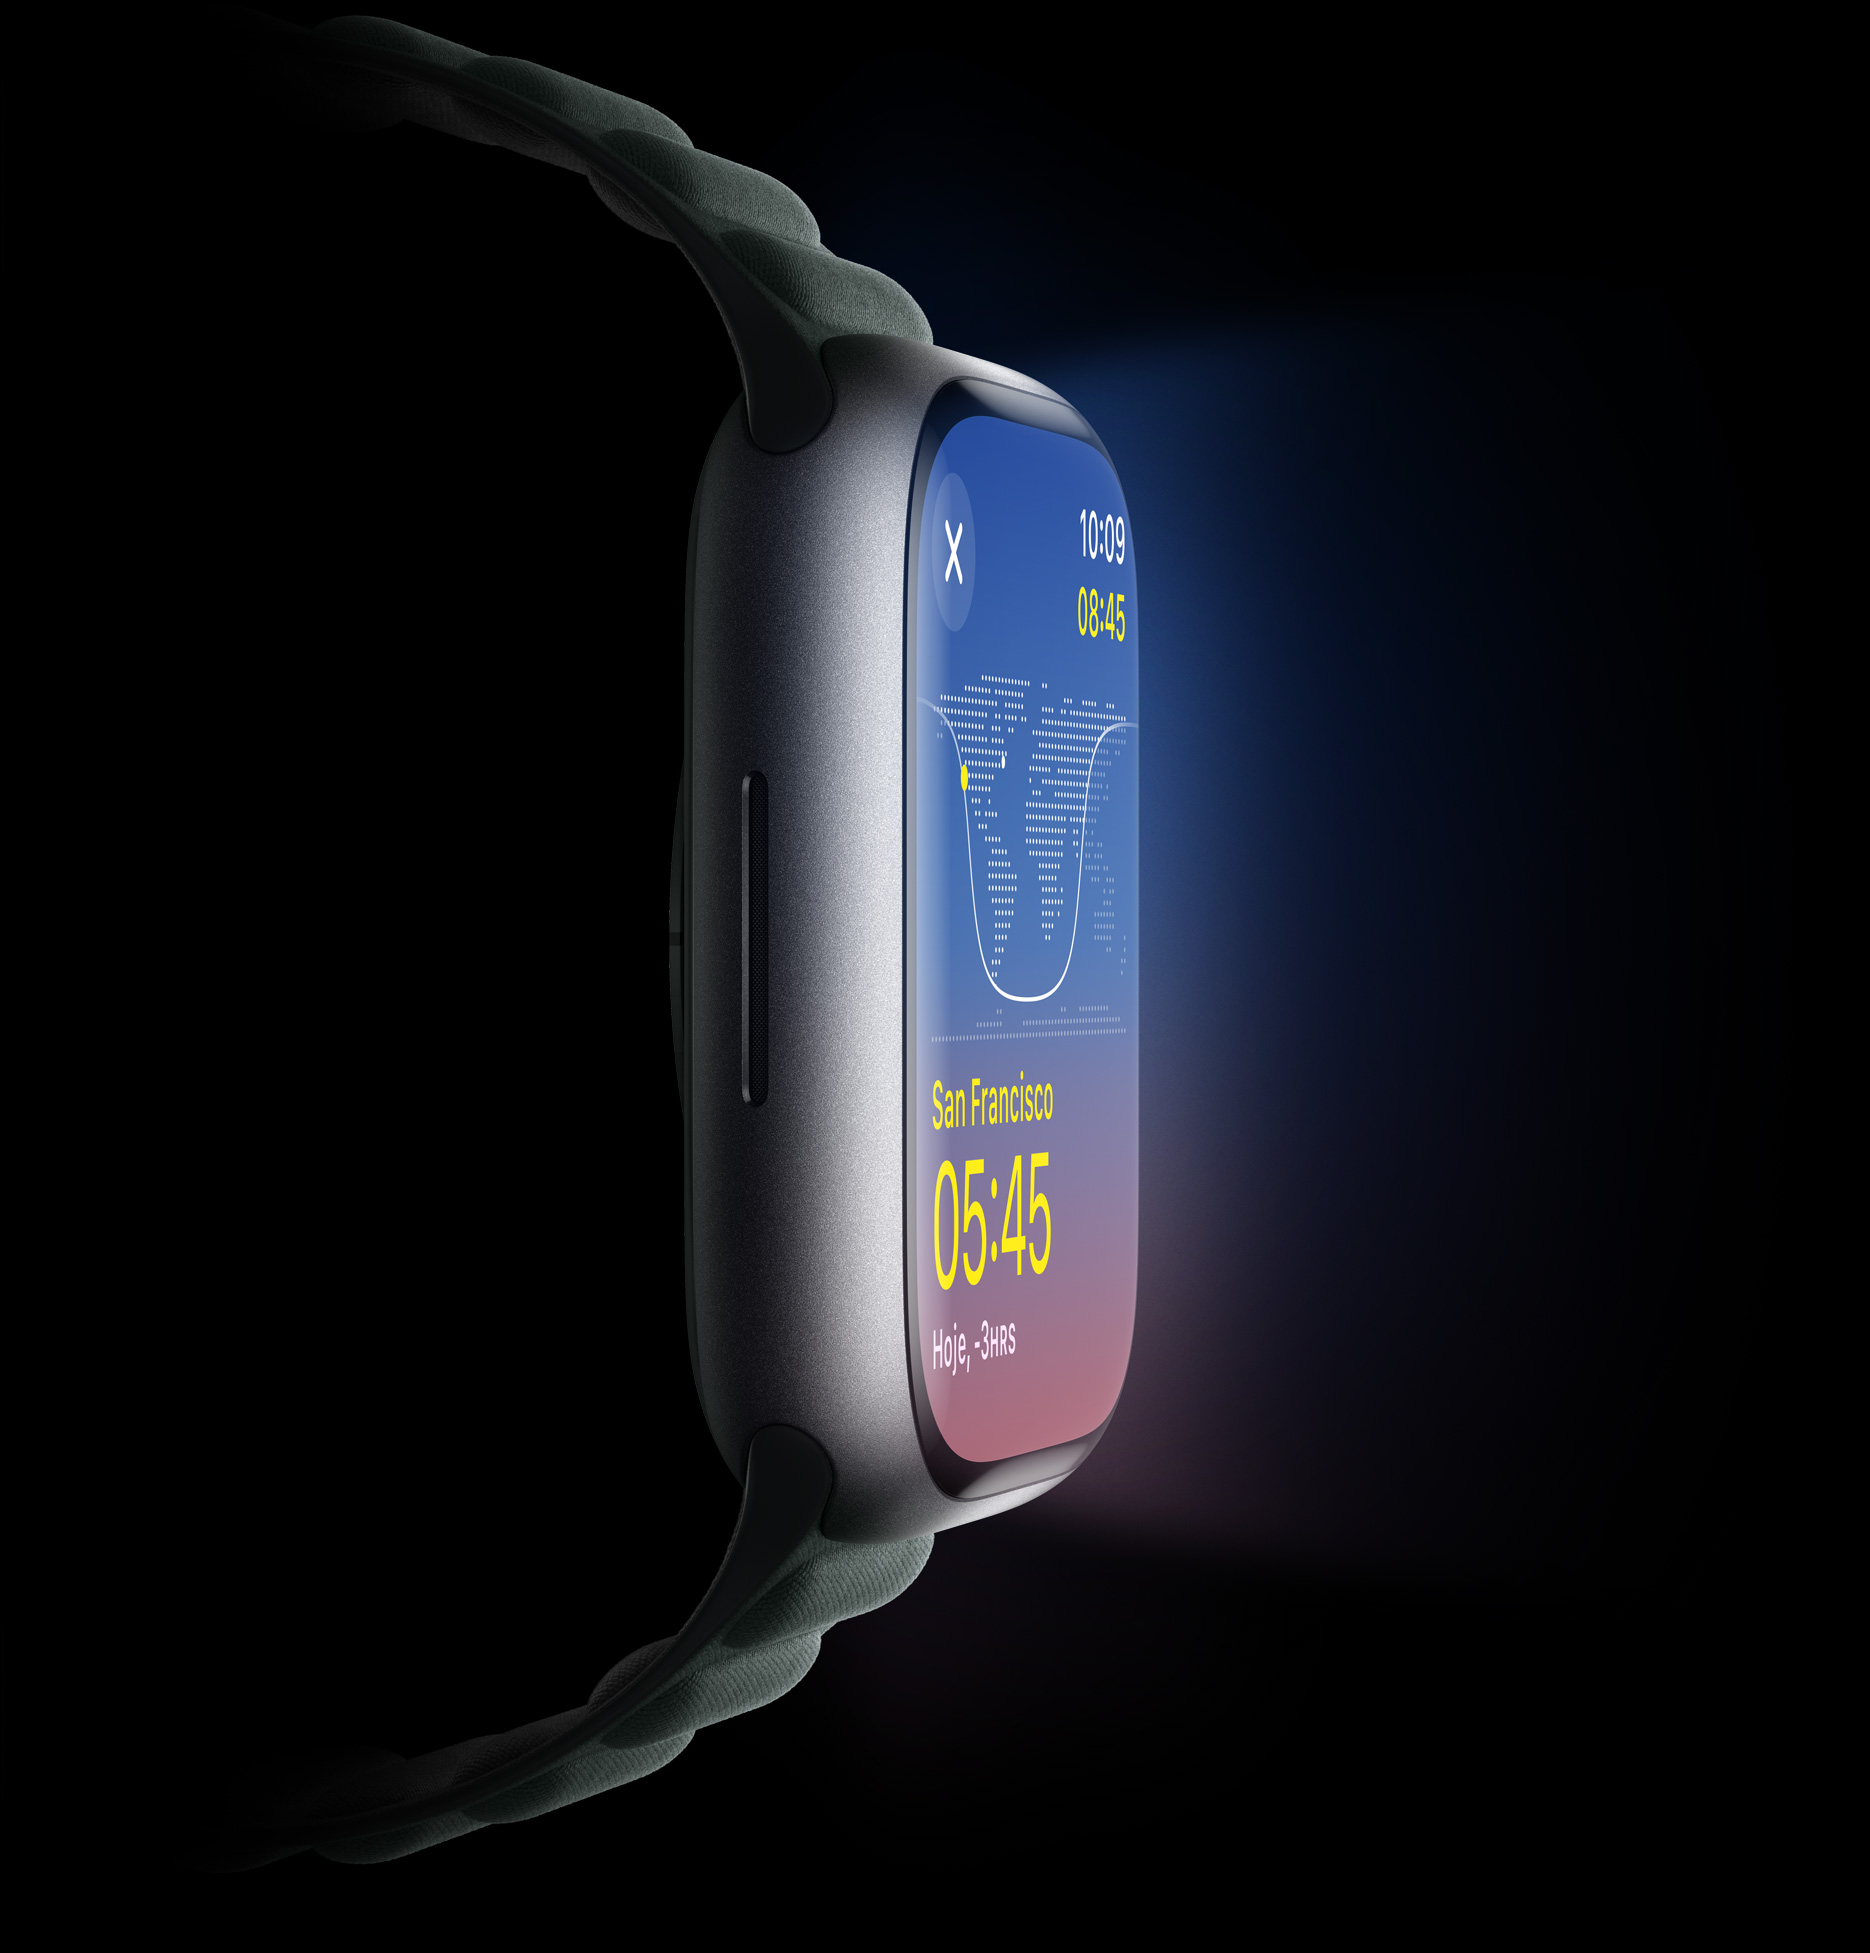 Imagem da lateral do Apple Watch mostrando como a tela é brilhante.